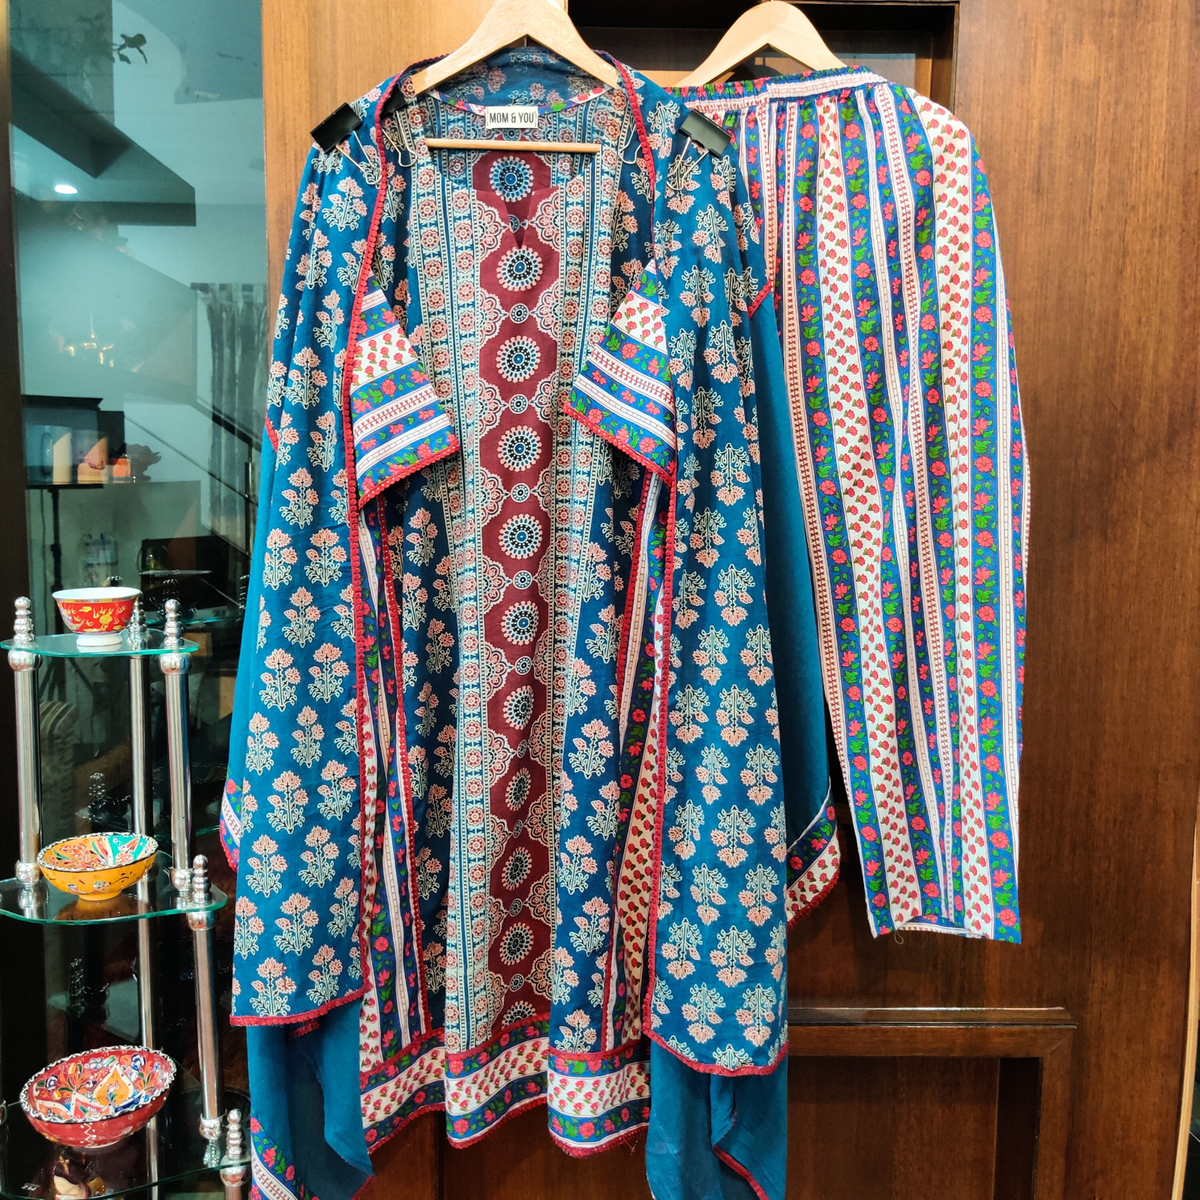 Blue Ajrakh Cotton Stitched Suit Set - Mom & You Clothing